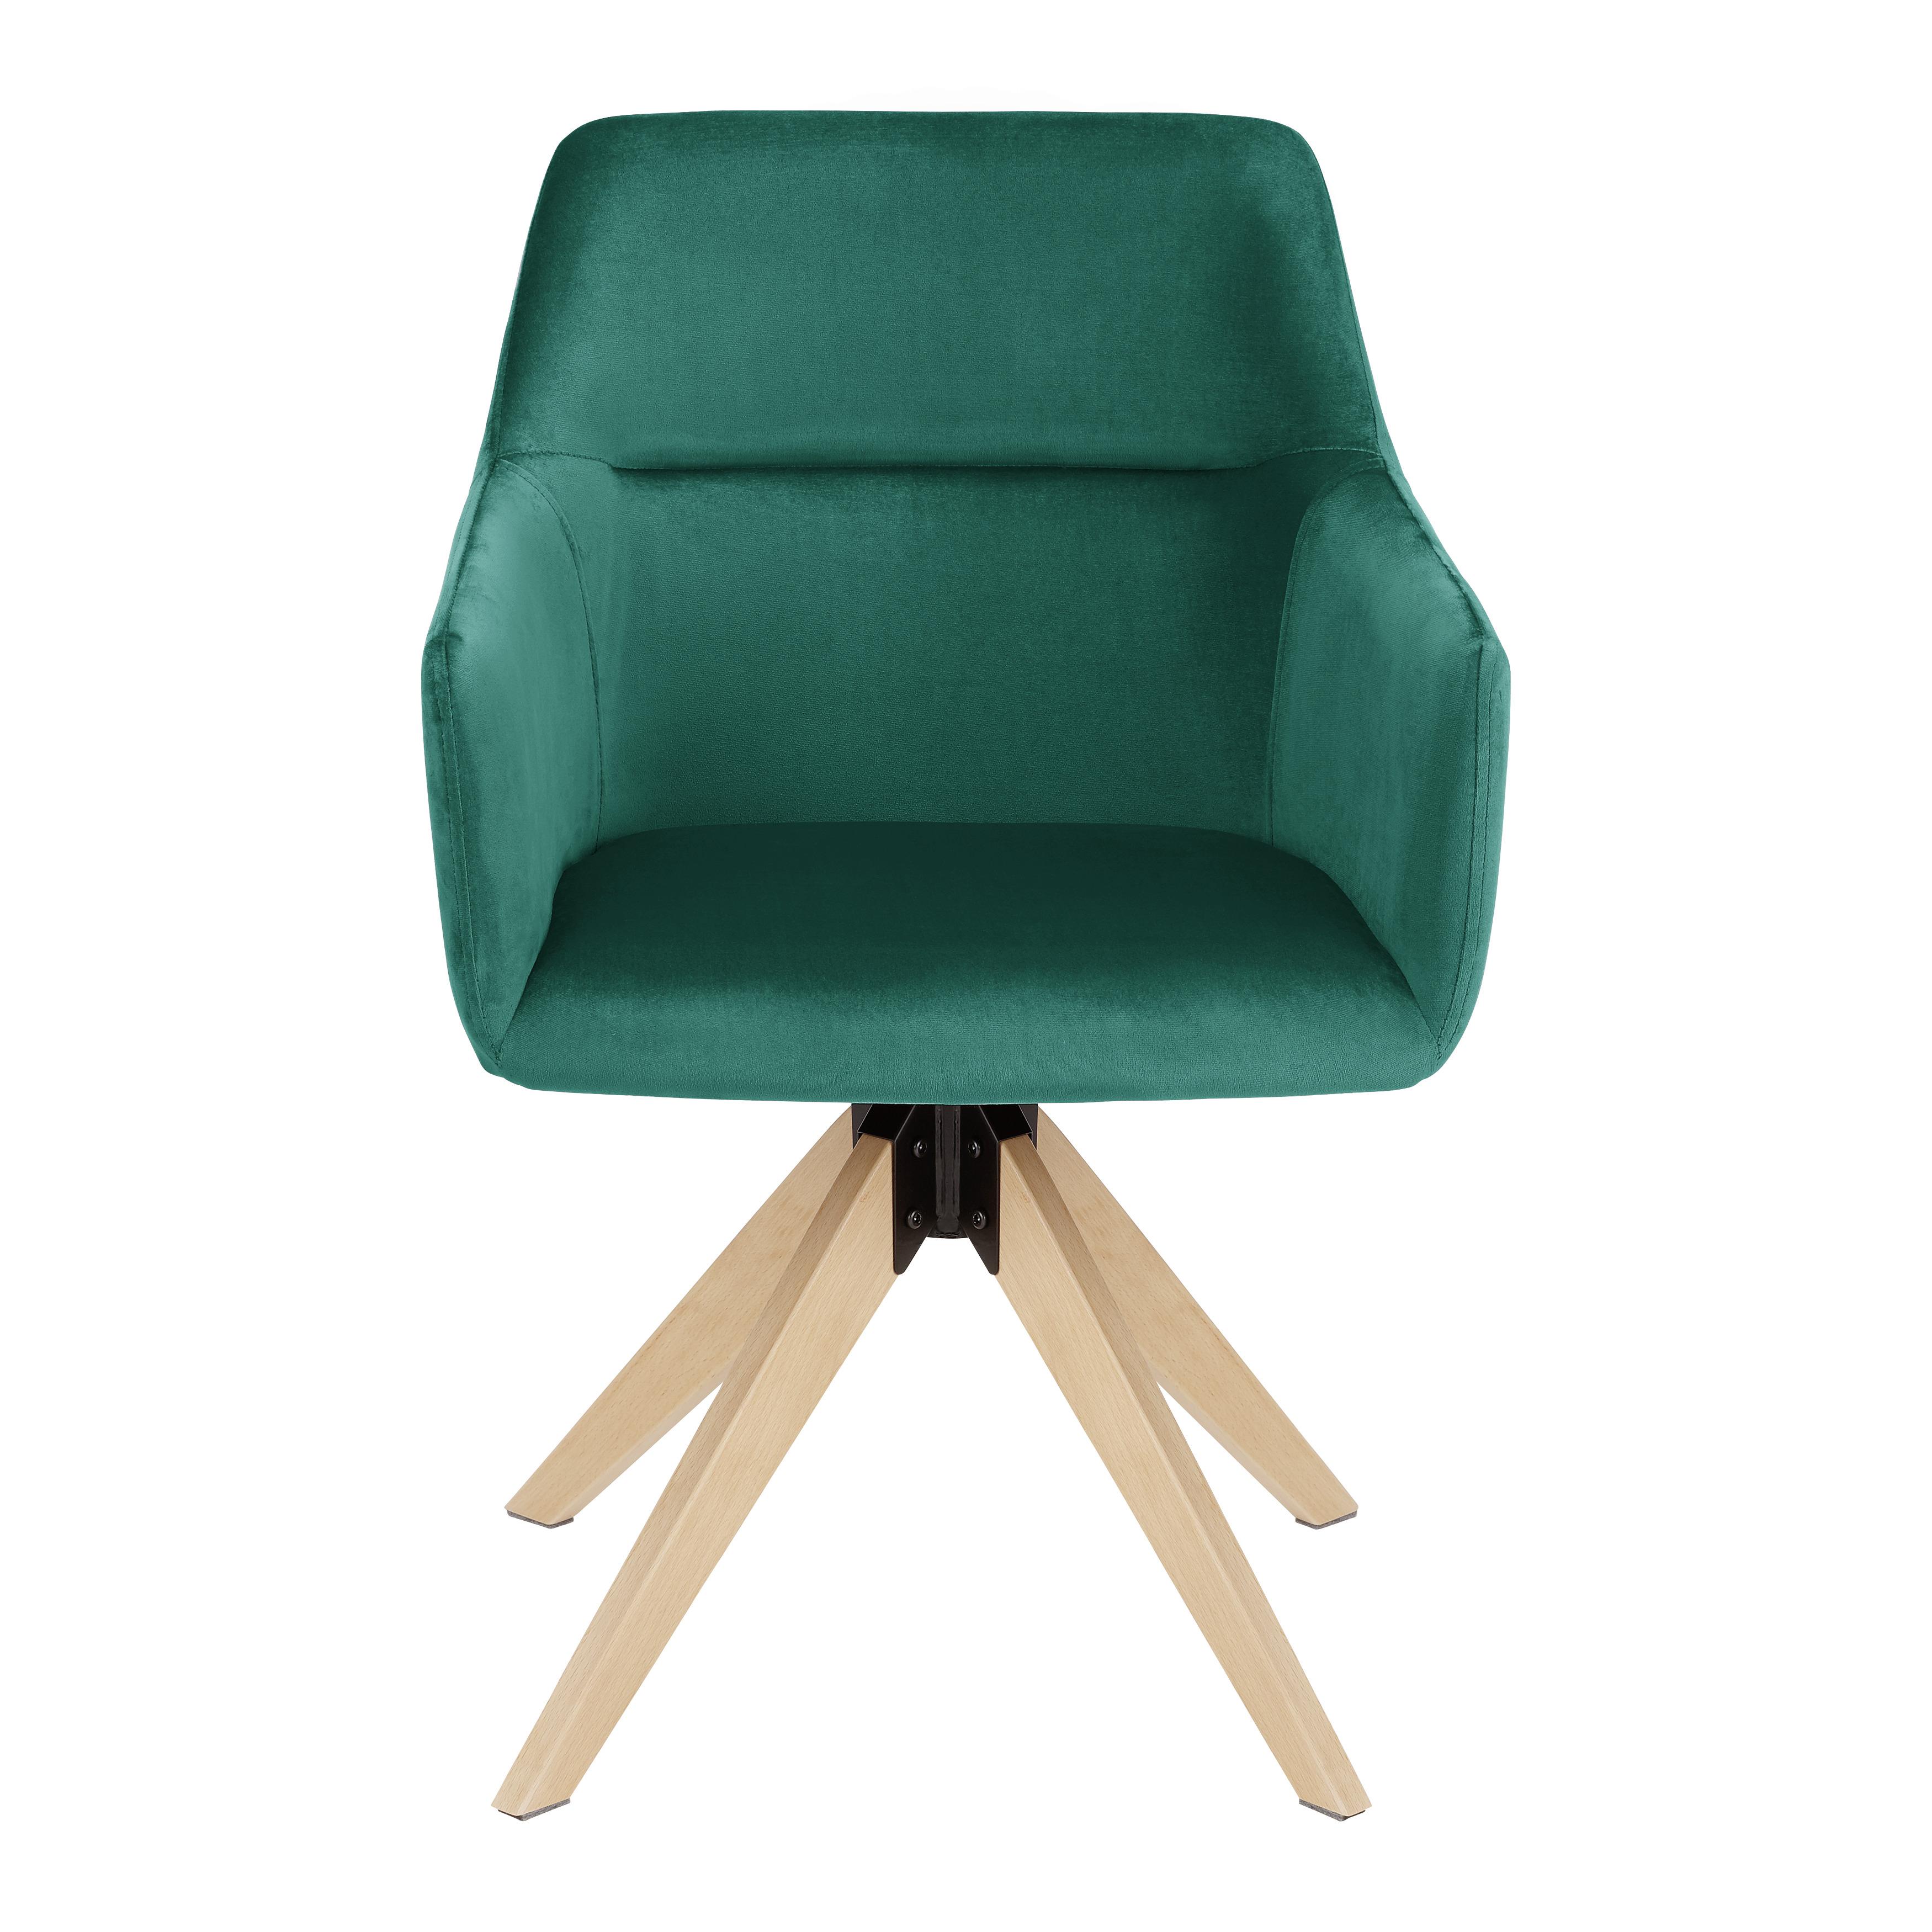 Jídelní Židle Sara Zelená - zelená/barvy buku, Moderní, dřevo/textil (57/84,5/57,5cm) - Modern Living